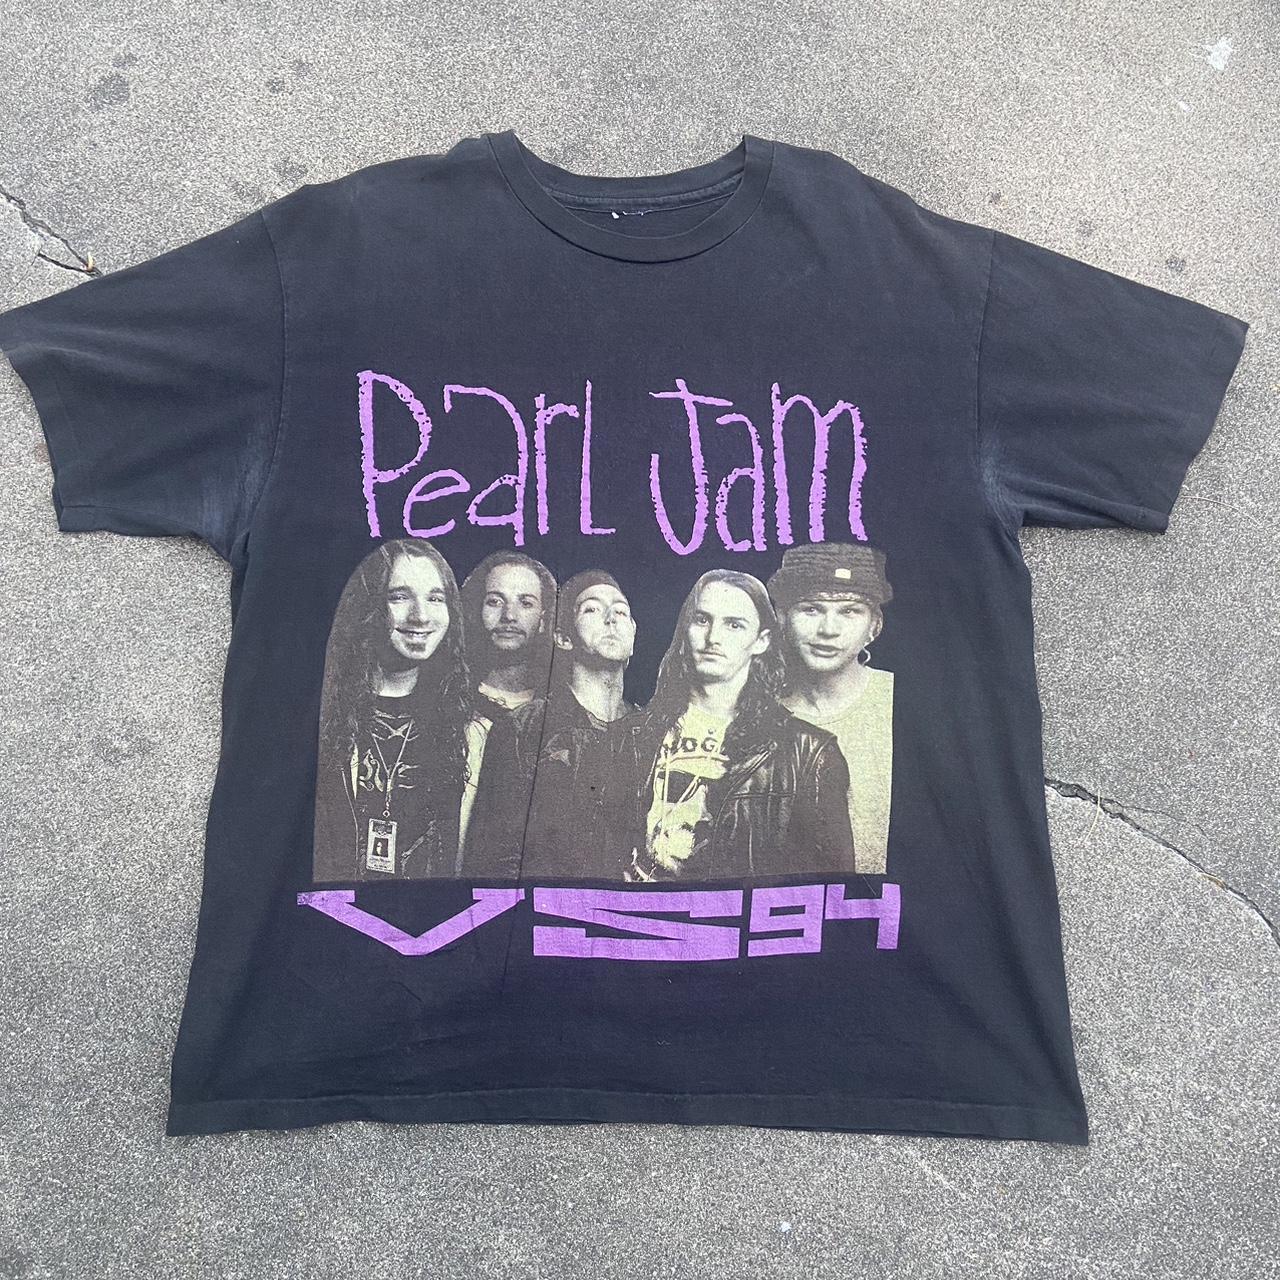 Vintage Pearl Jam Vs Tour Shirt Measurements 22 x - Depop